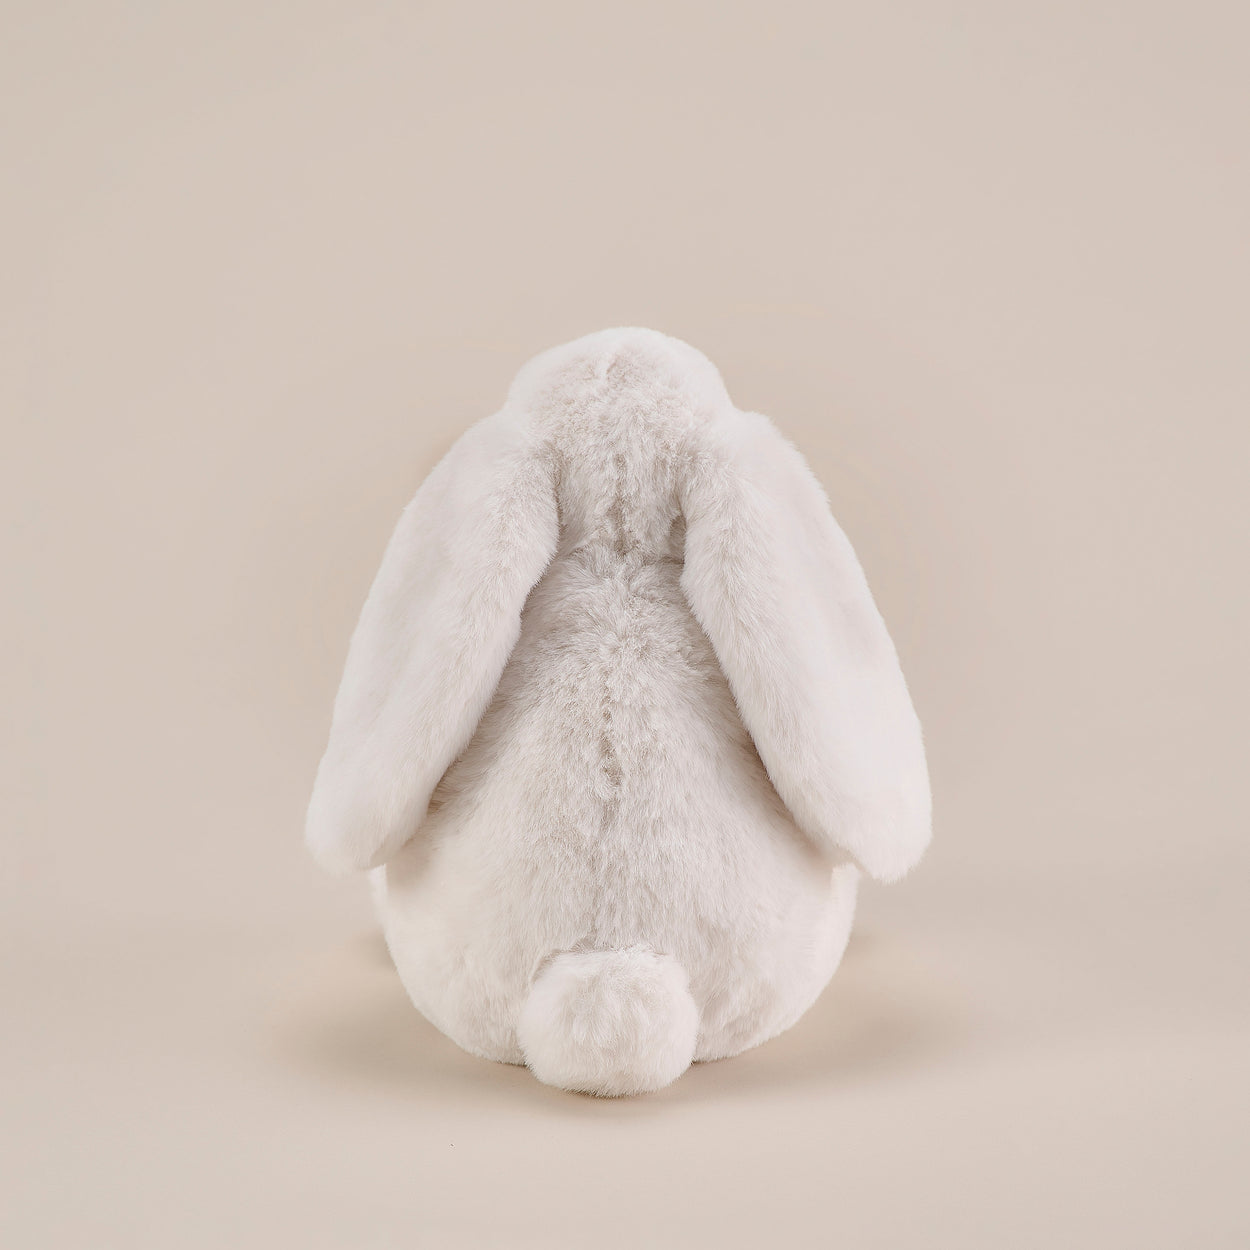 Kanin Snödröm Kritvit 30 cm - Gosedjur